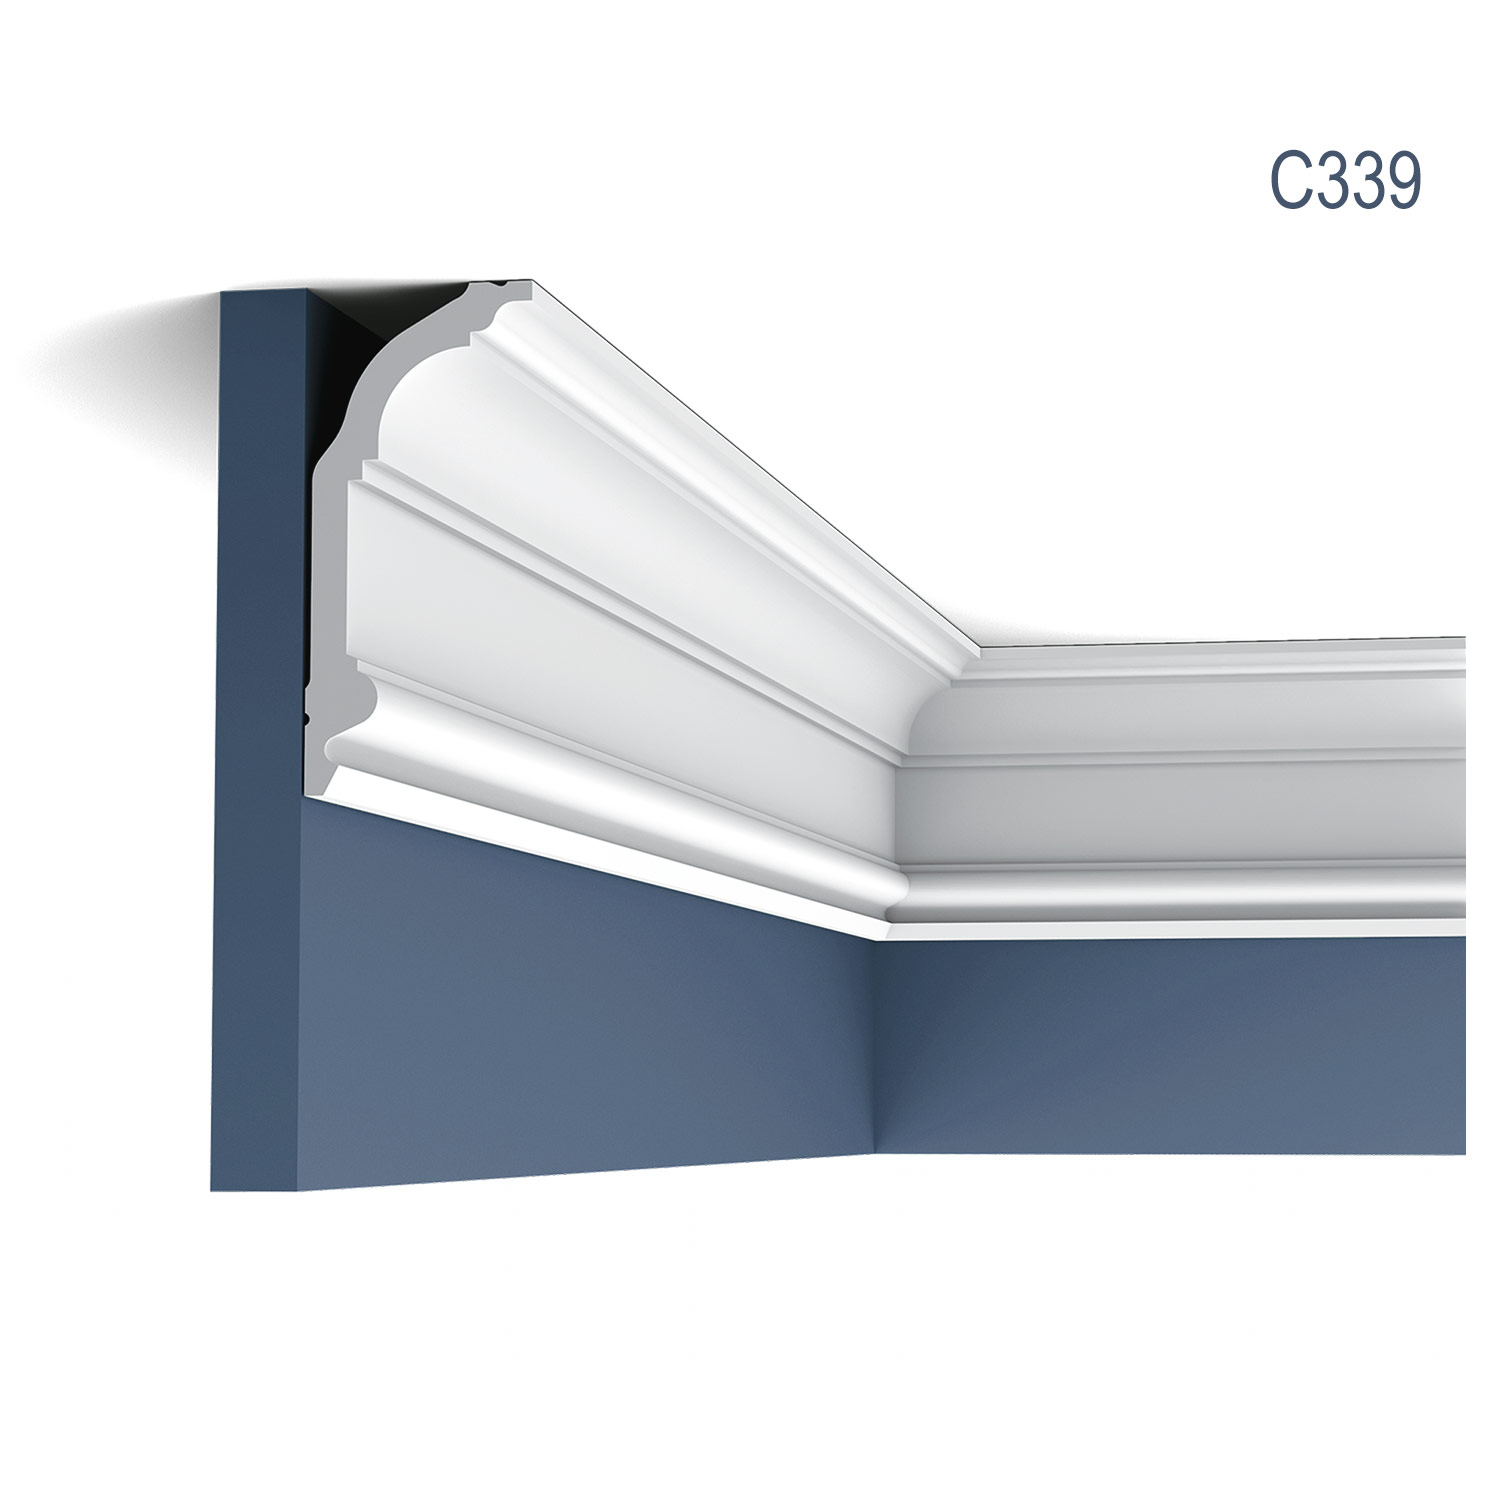 Cornisa C339 NOBLESE pentru tavan, alba, vopsibila, rigida, calitate excelenta, Belgia, din Poliuretan rigid, L 200 x H 14.1 x W 6.4 cm